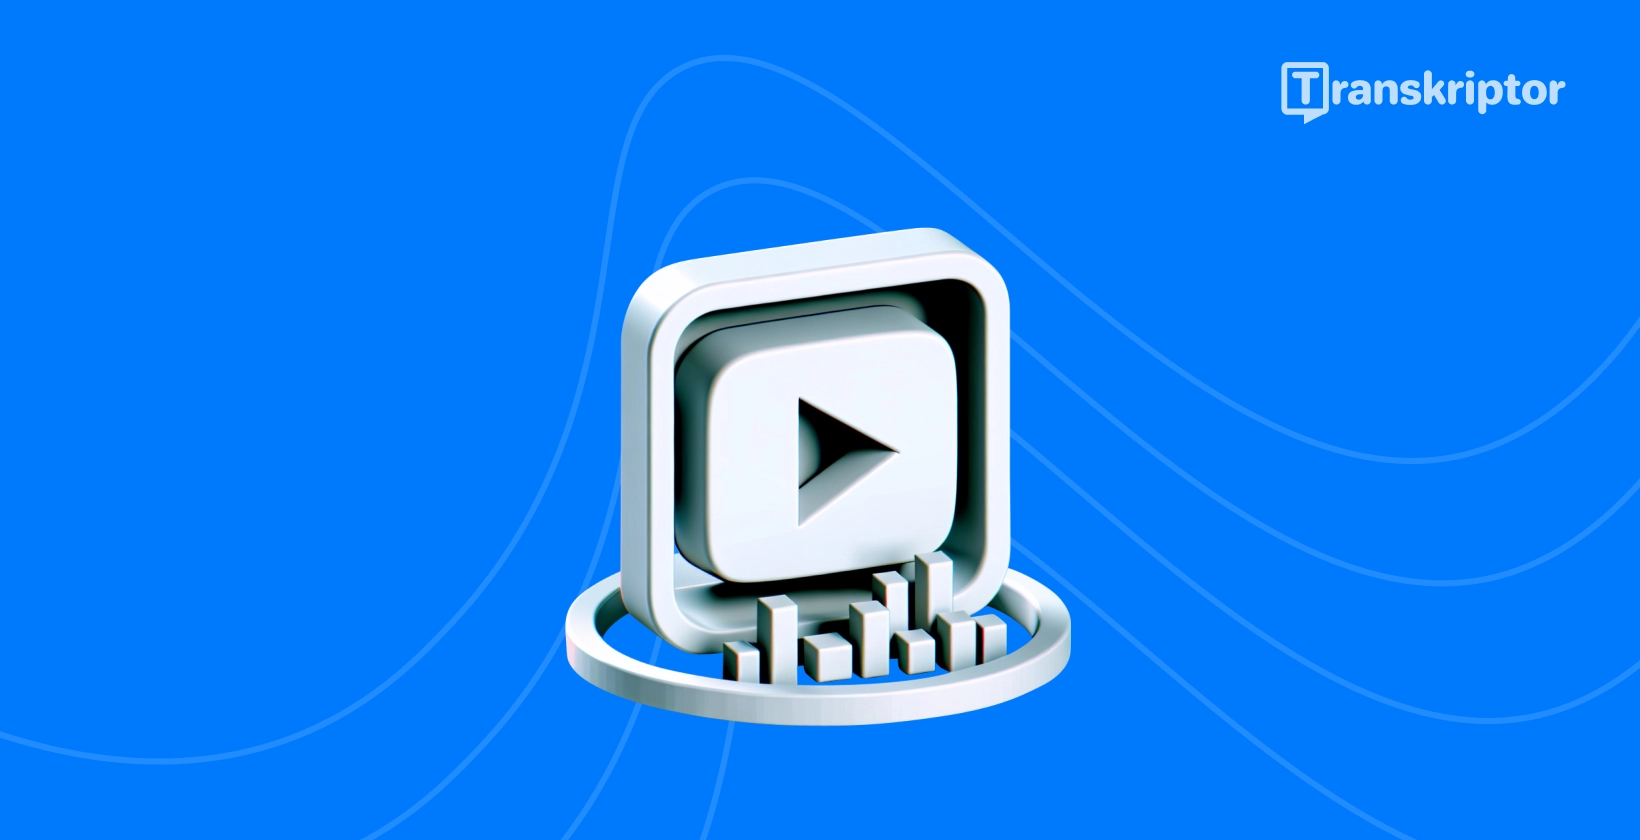 Бутон за възпроизвеждане и транскрипция визуални илюстриращи методи за ефективно транскрибиране YouTube видеоклипове.